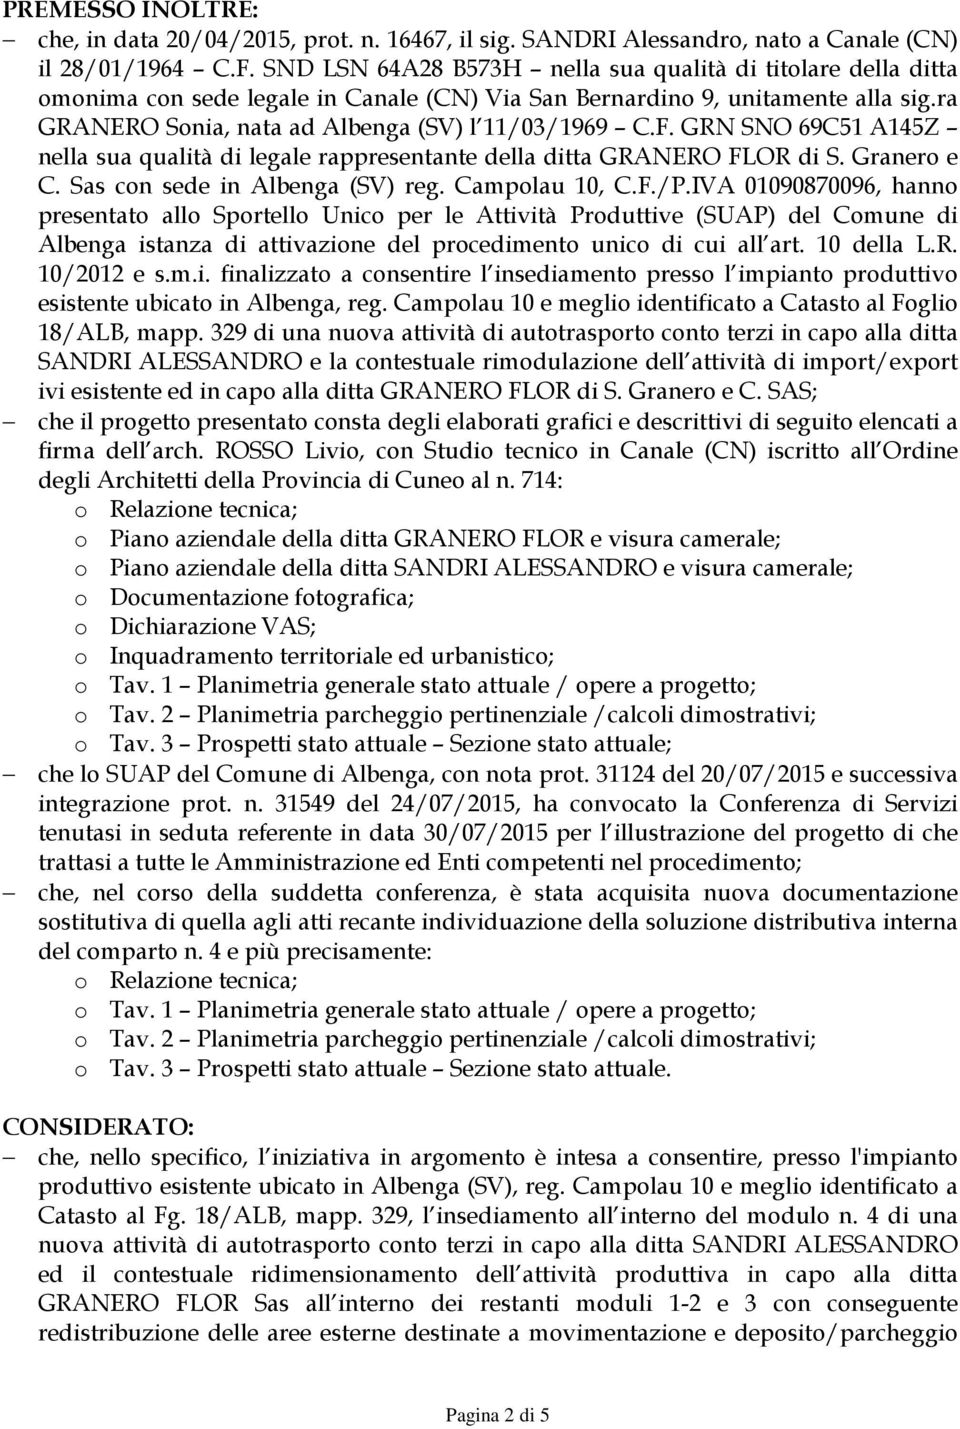 GRN SNO 69C51 A145Z nella sua qualità di legale rappresentante della ditta GRANERO FLOR di S. Granero e C. Sas con sede in Albenga (SV) reg. Campolau 10, C.F./P.